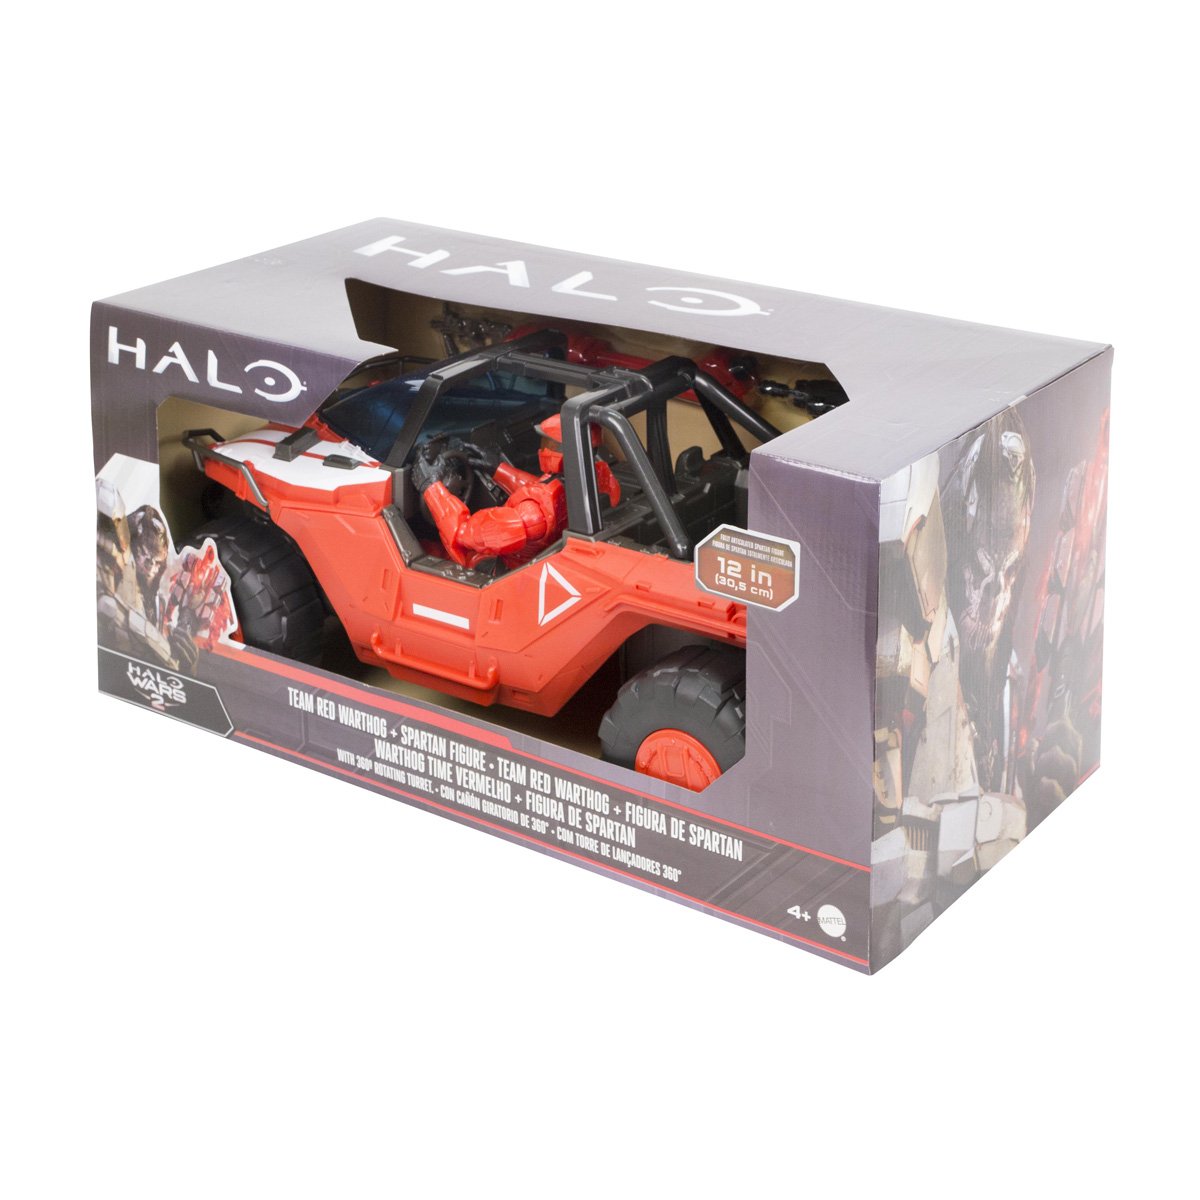 Halo Warthog Red + Fig Mattel